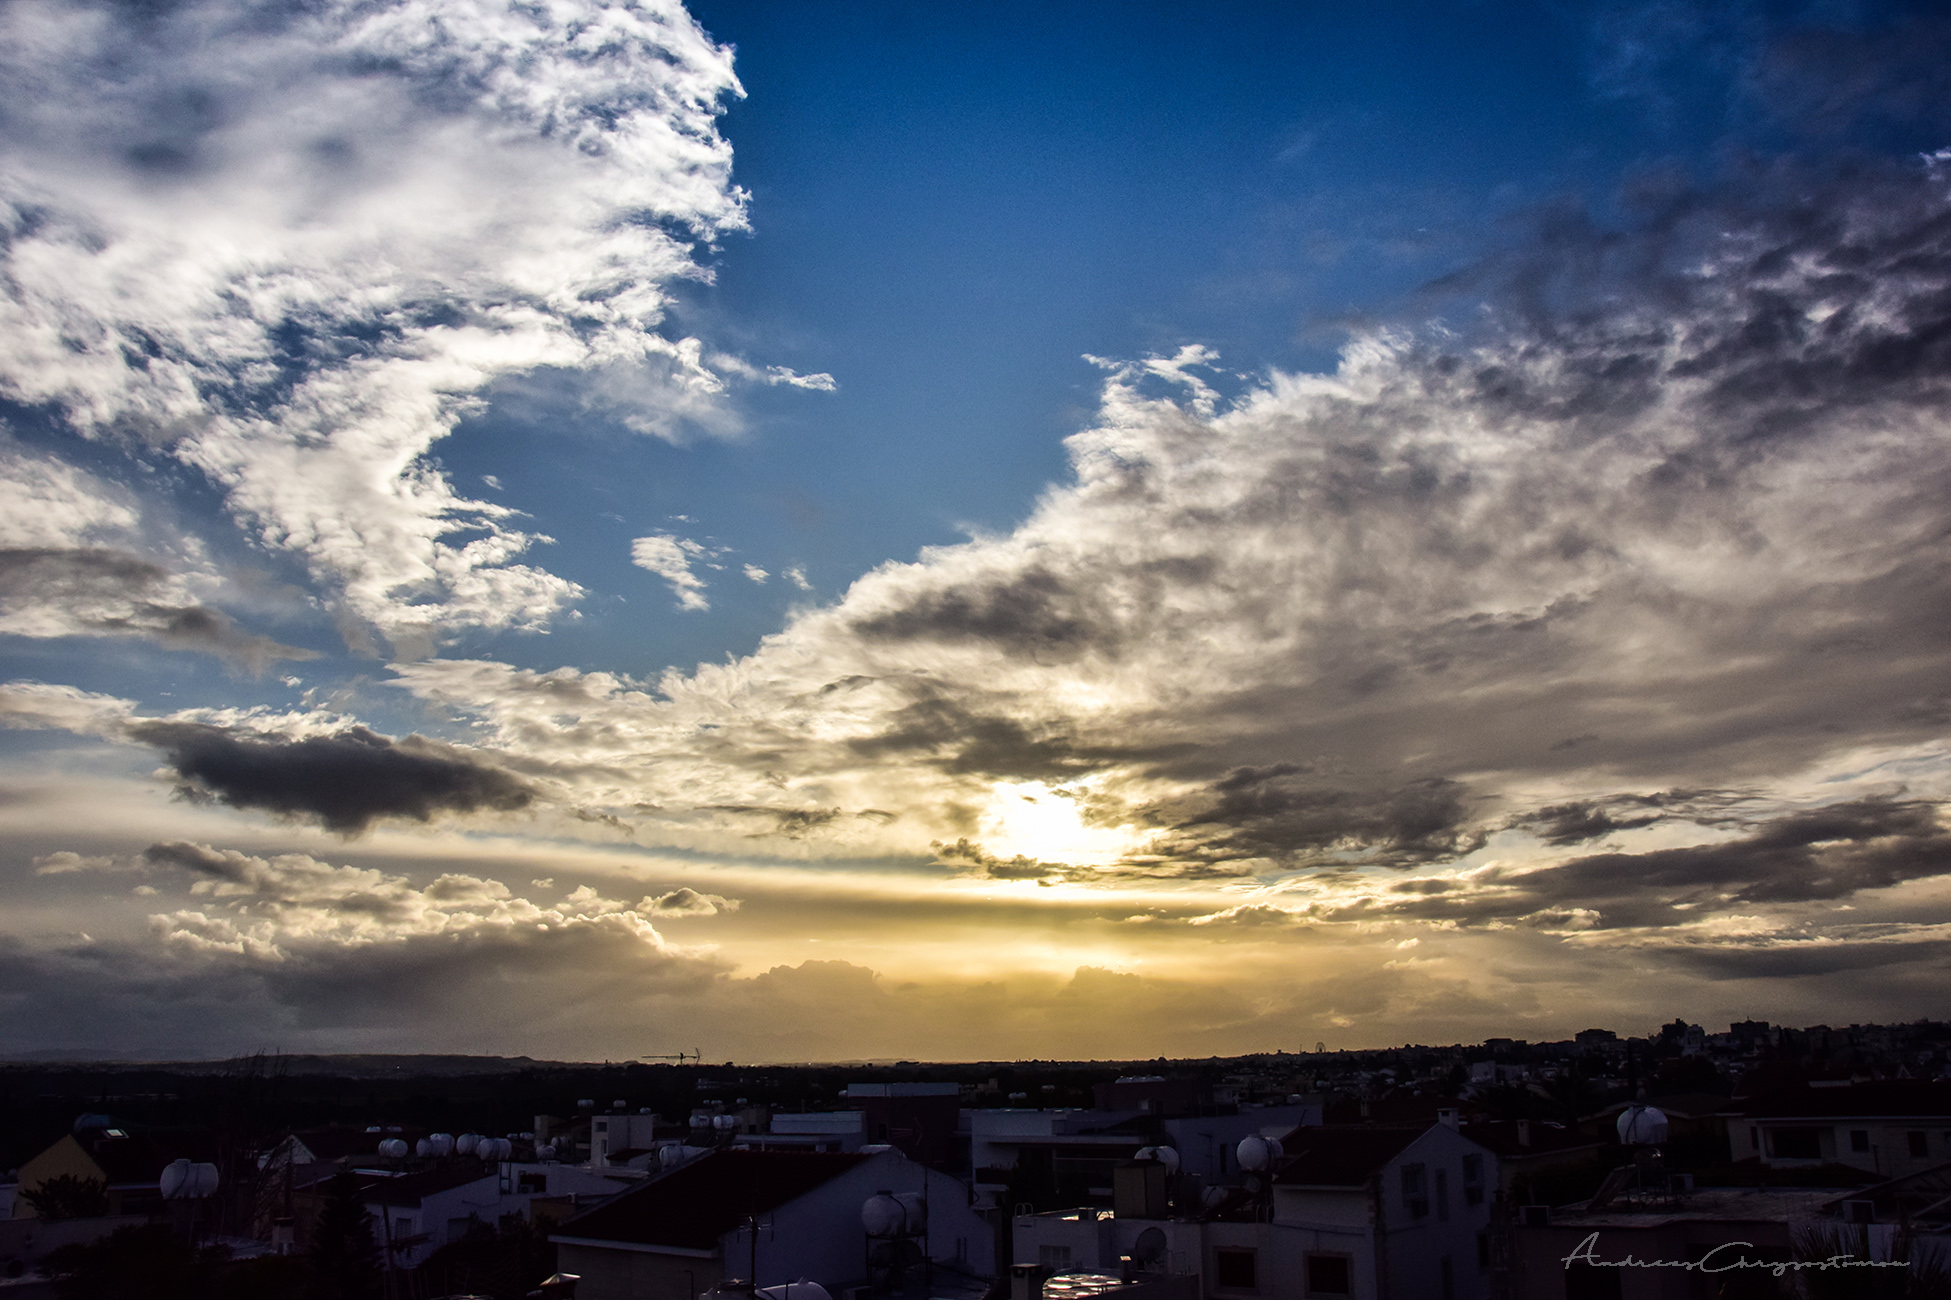 Το «φωτοχημικό σύννεφο του θανάτου»: Το περίεργο και επικίνδυνο σύννεφο που εγκαταστάθηκε στον ουρανό της Αθήνας (φωτο)